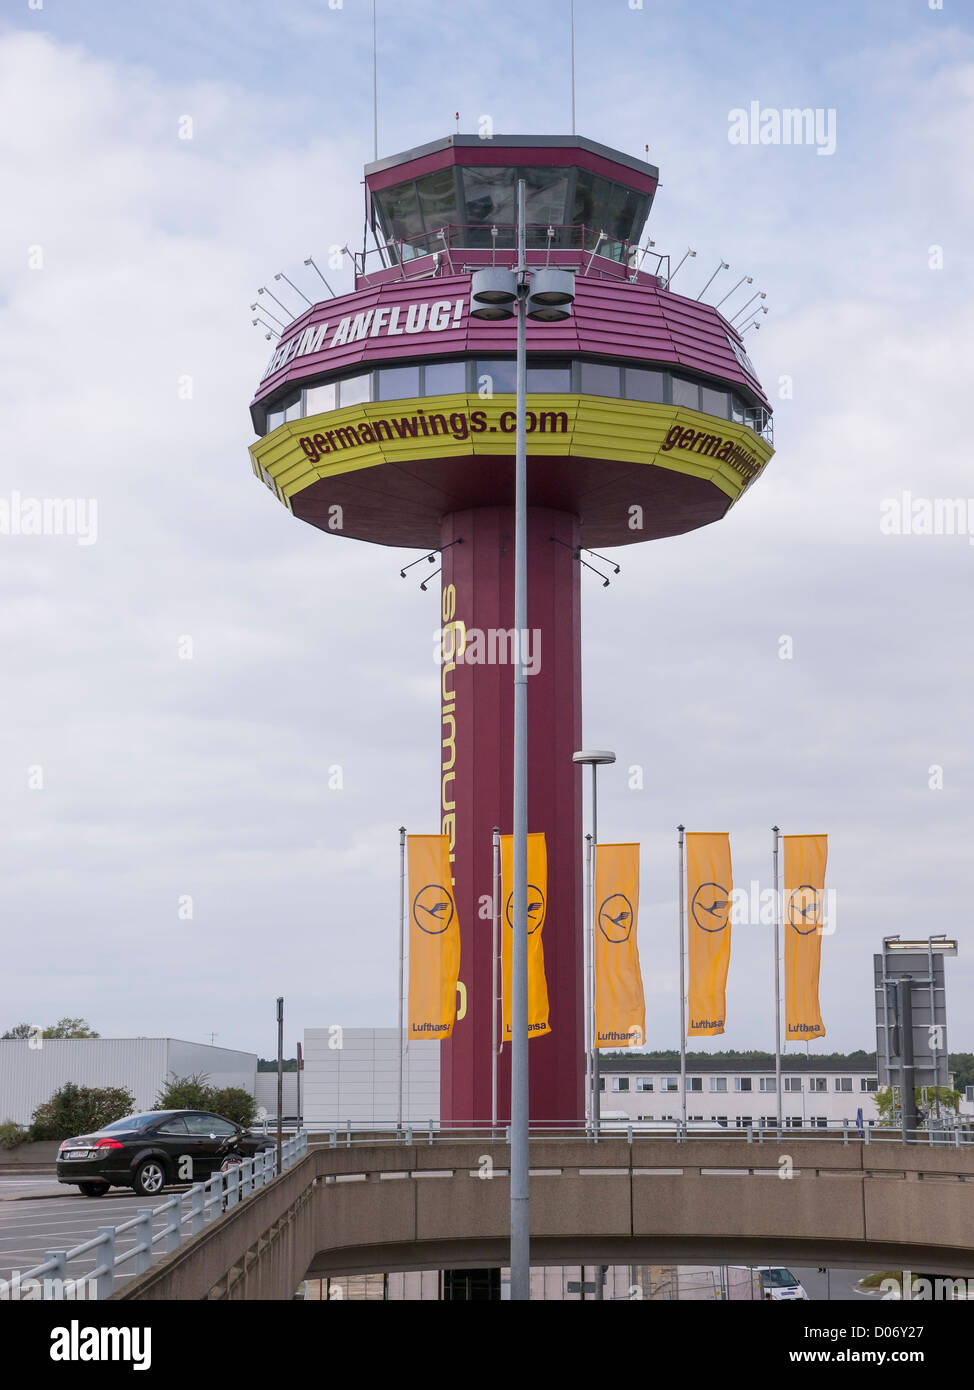 Il sistema di controllo del traffico aereo torre all aeroporto di Hannover, Germania. Esso è dipinto con i colori e il logo della compagnia aerea Germanwings. Foto Stock